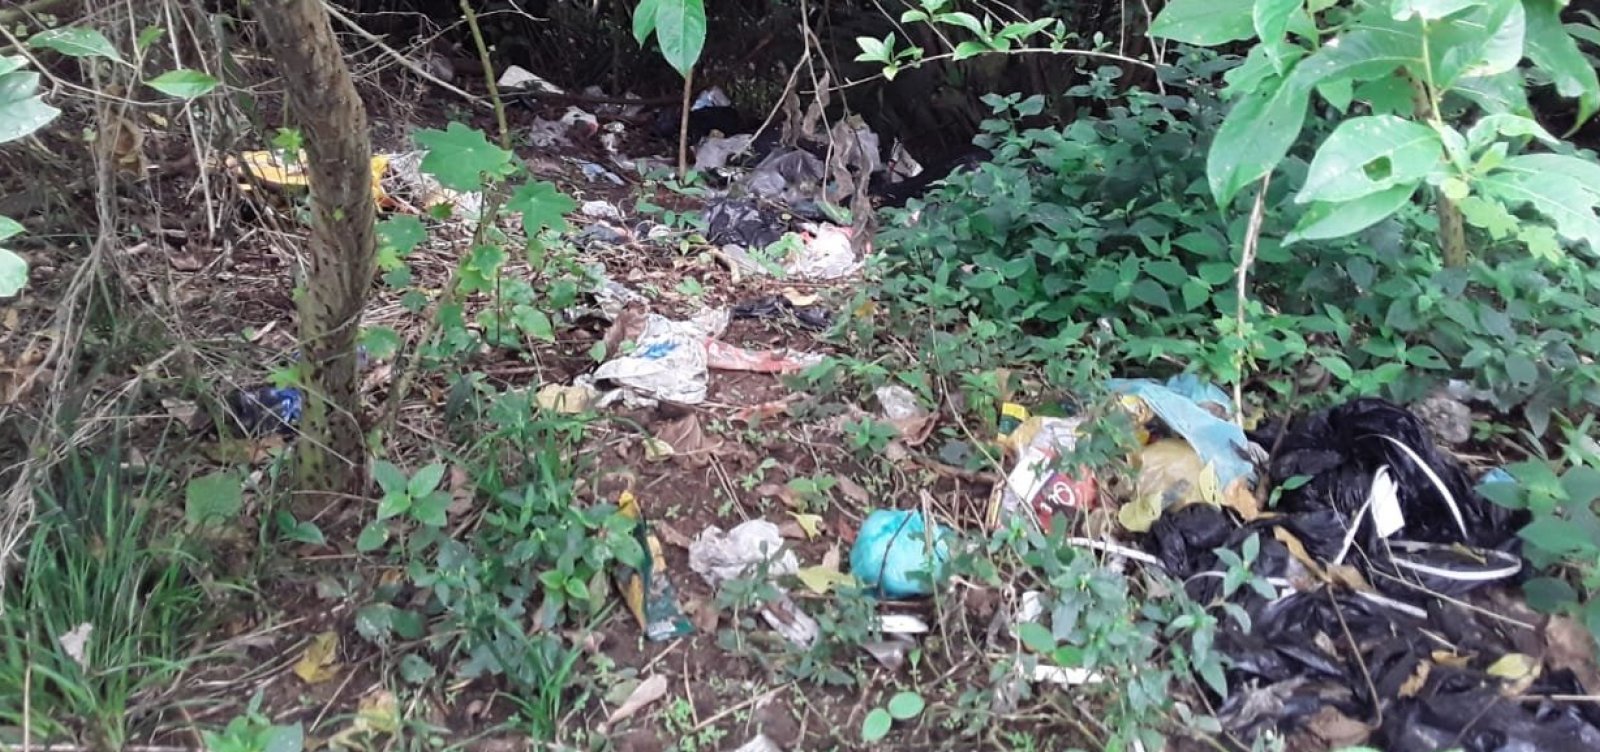 Ocupações irregulares geram acúmulo de lixo no Parque de Pituaçu; secretária não dá resposta